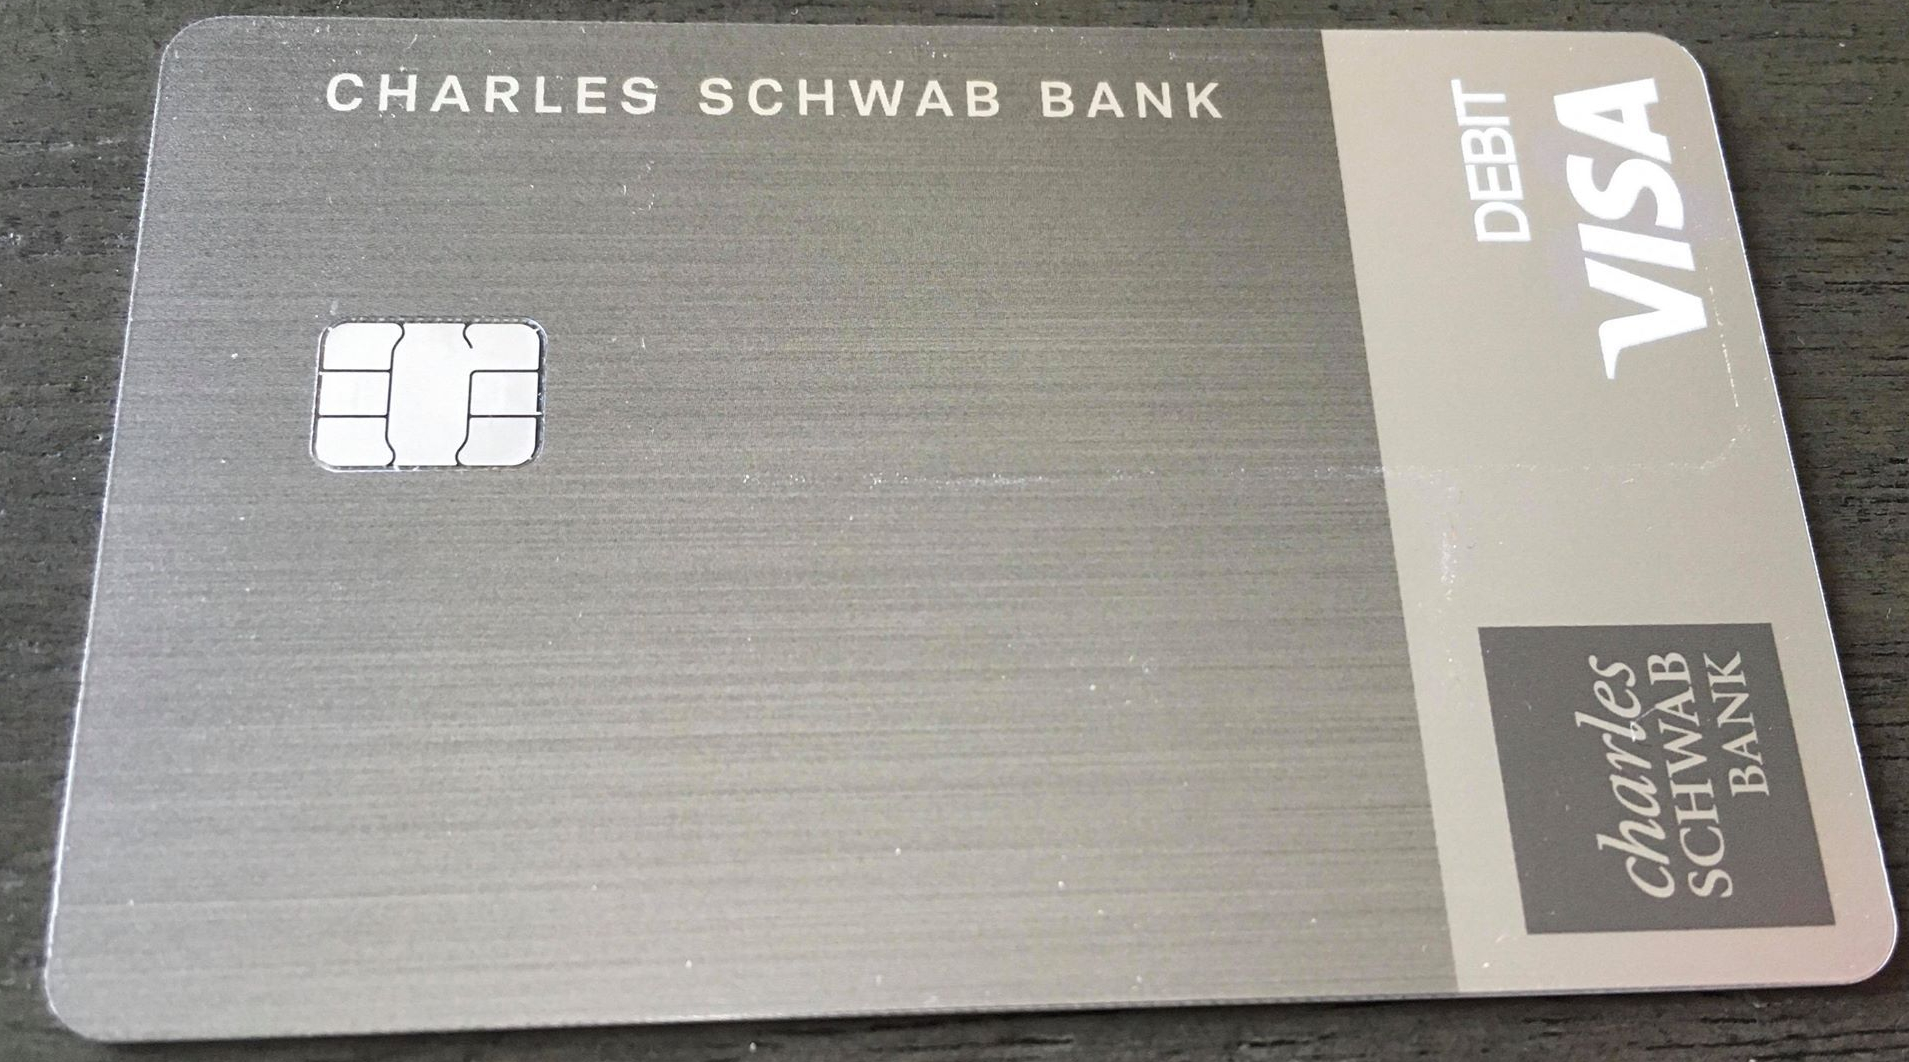 Charles Schwab debit card